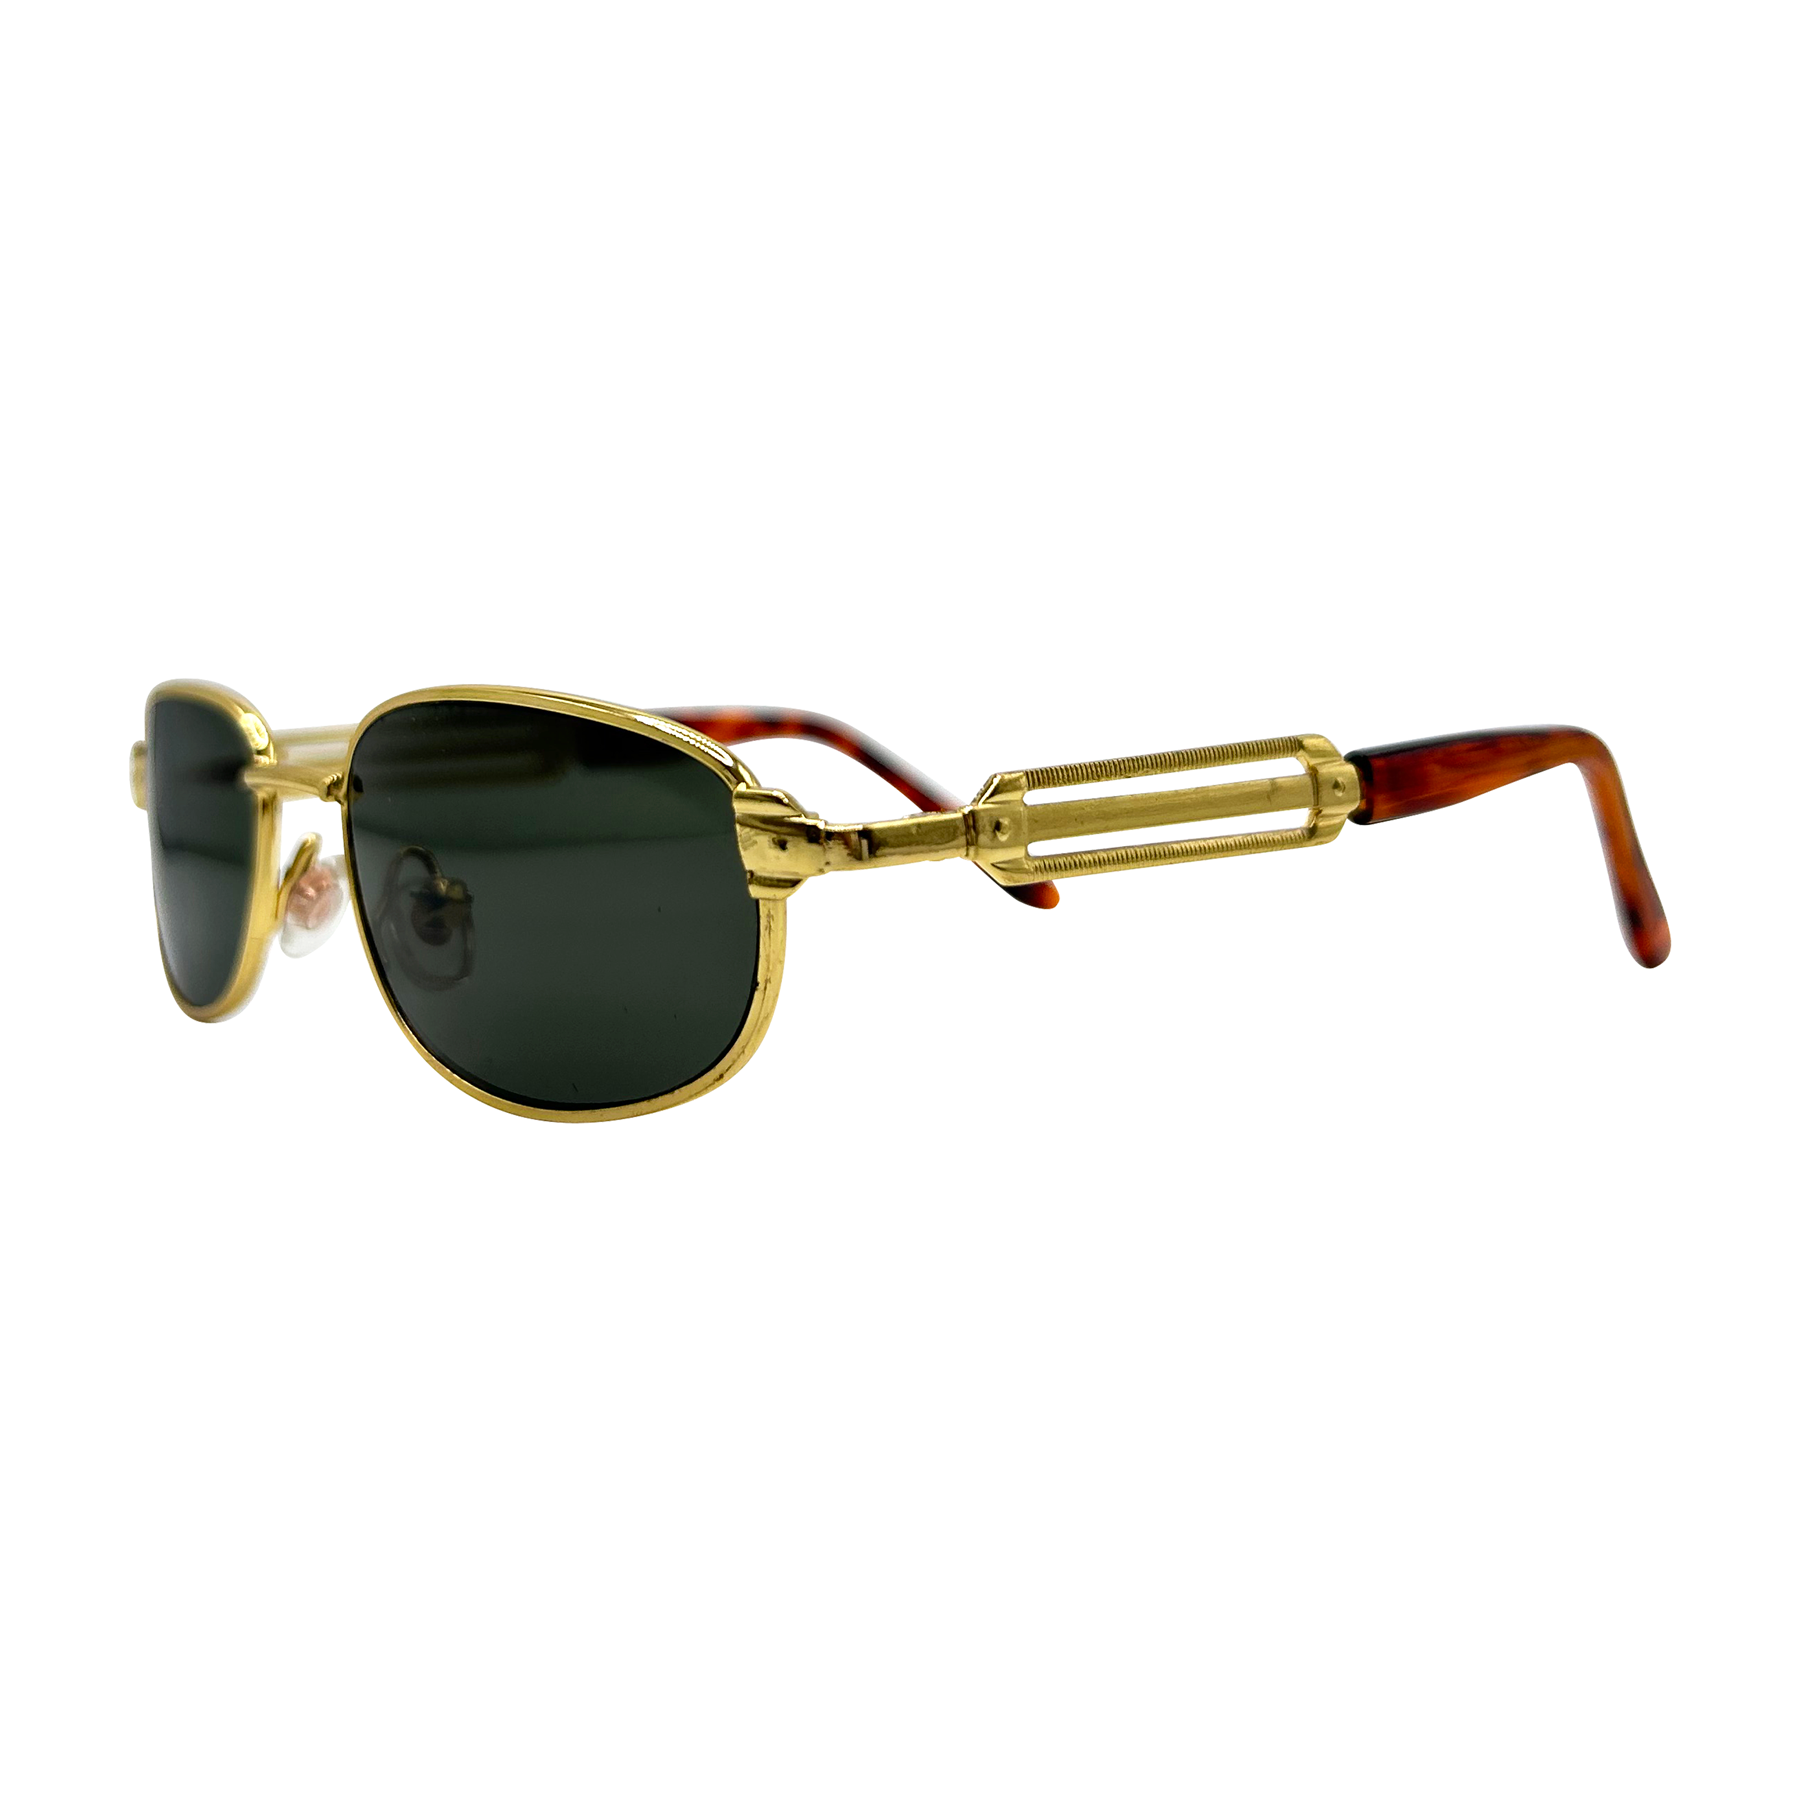 Kids ⭐️ MOTO Square 90s Sunglasses